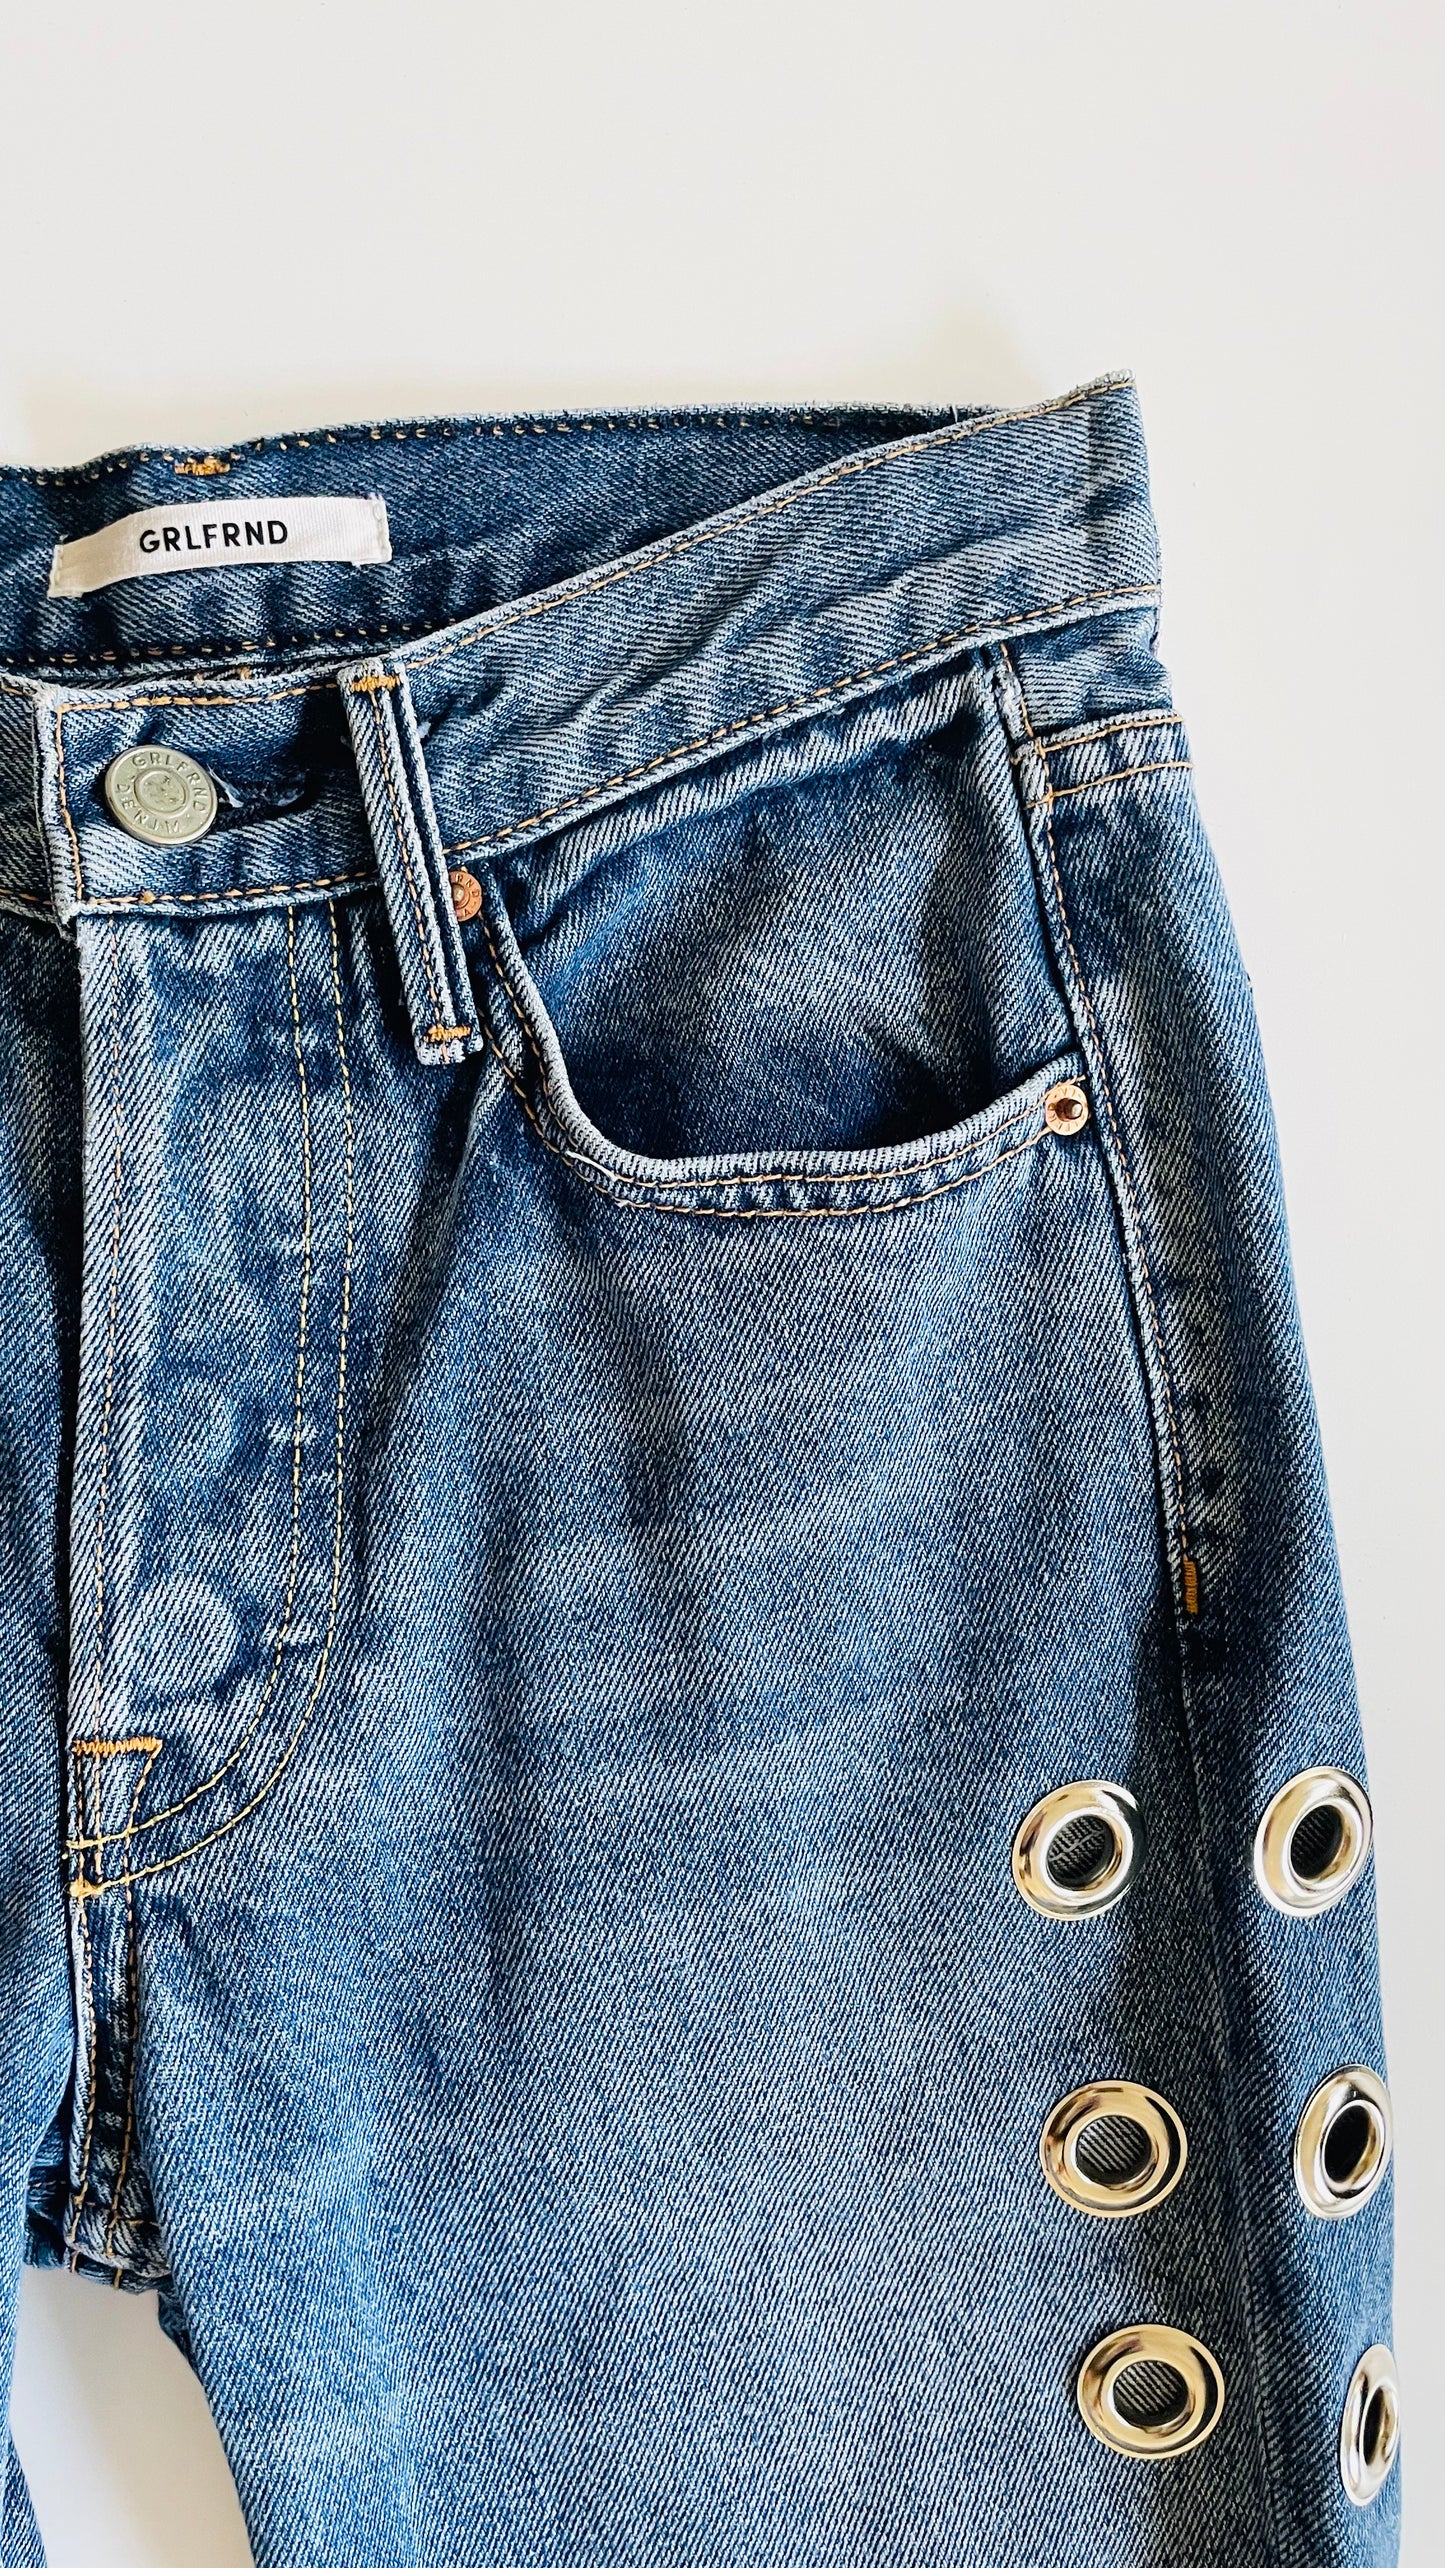 Pre-Loved GRLFRND mid blue vintage wash slim fit jeans - Size 23 x 24